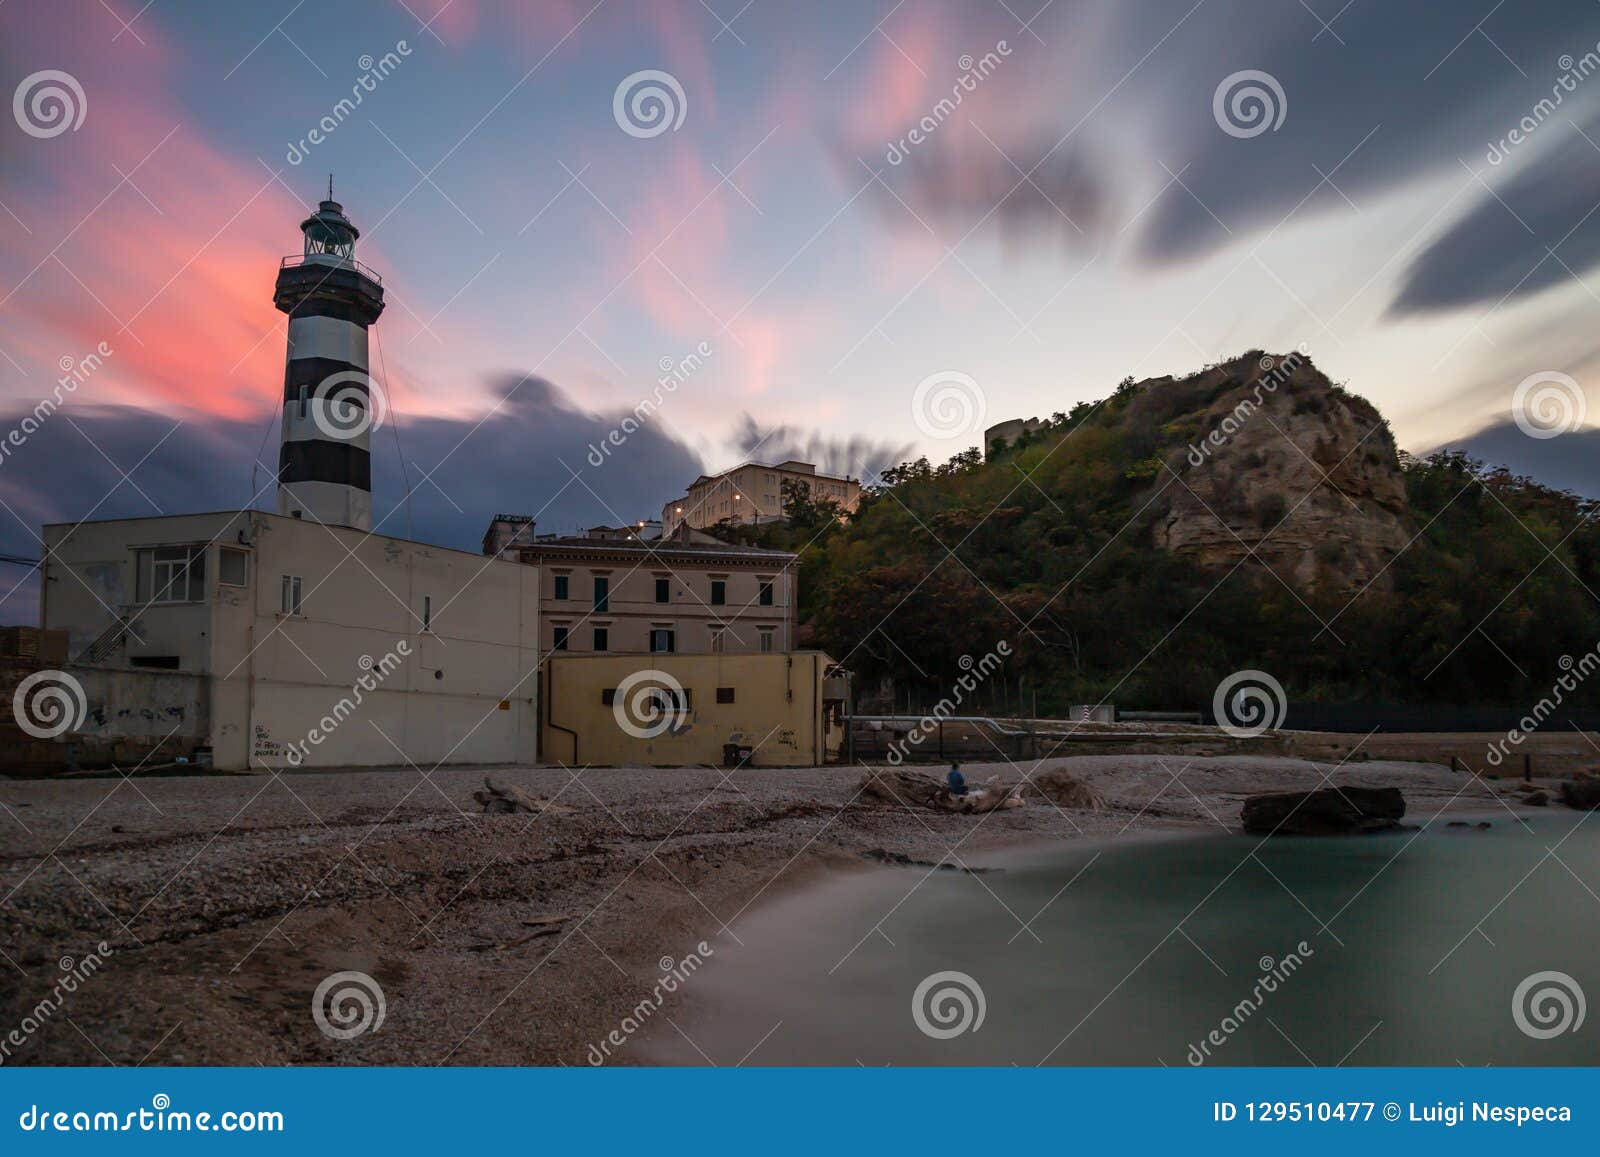 the lighthouse at ortona, provincia di chieti, costa adriatica